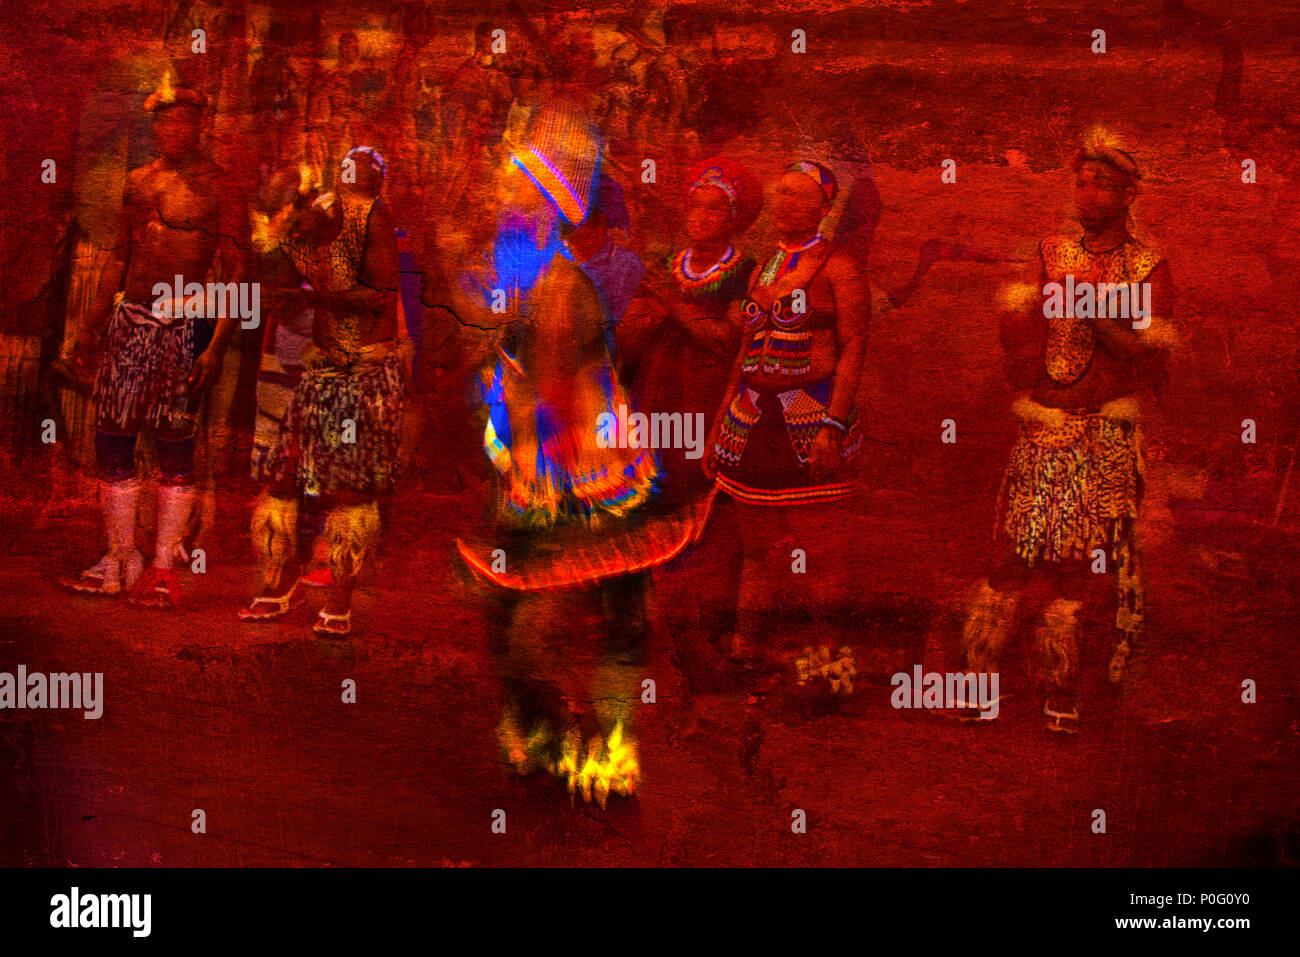 Brillamment colorées en danseuse africaine Motion regarder par d'autres danseurs contre un fond texturé rouge Banque D'Images